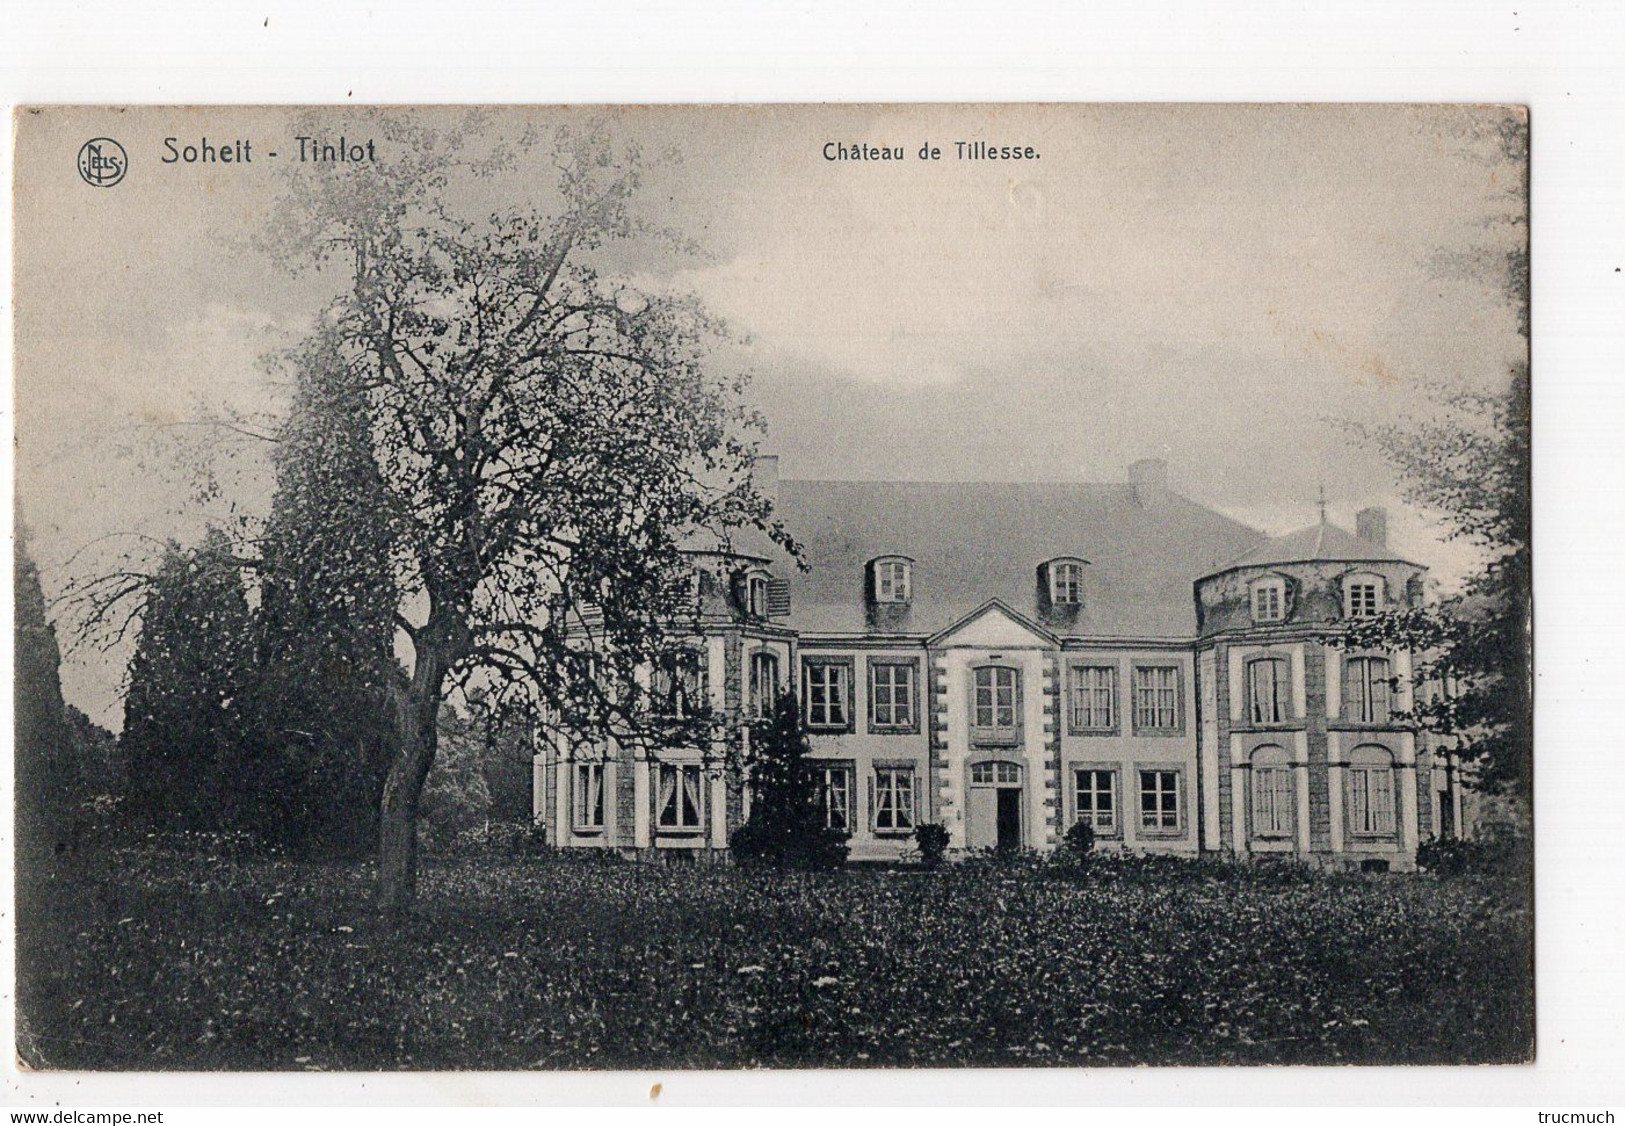 SOHEIT - TINLOT -  Château De Tillesse - Tinlot